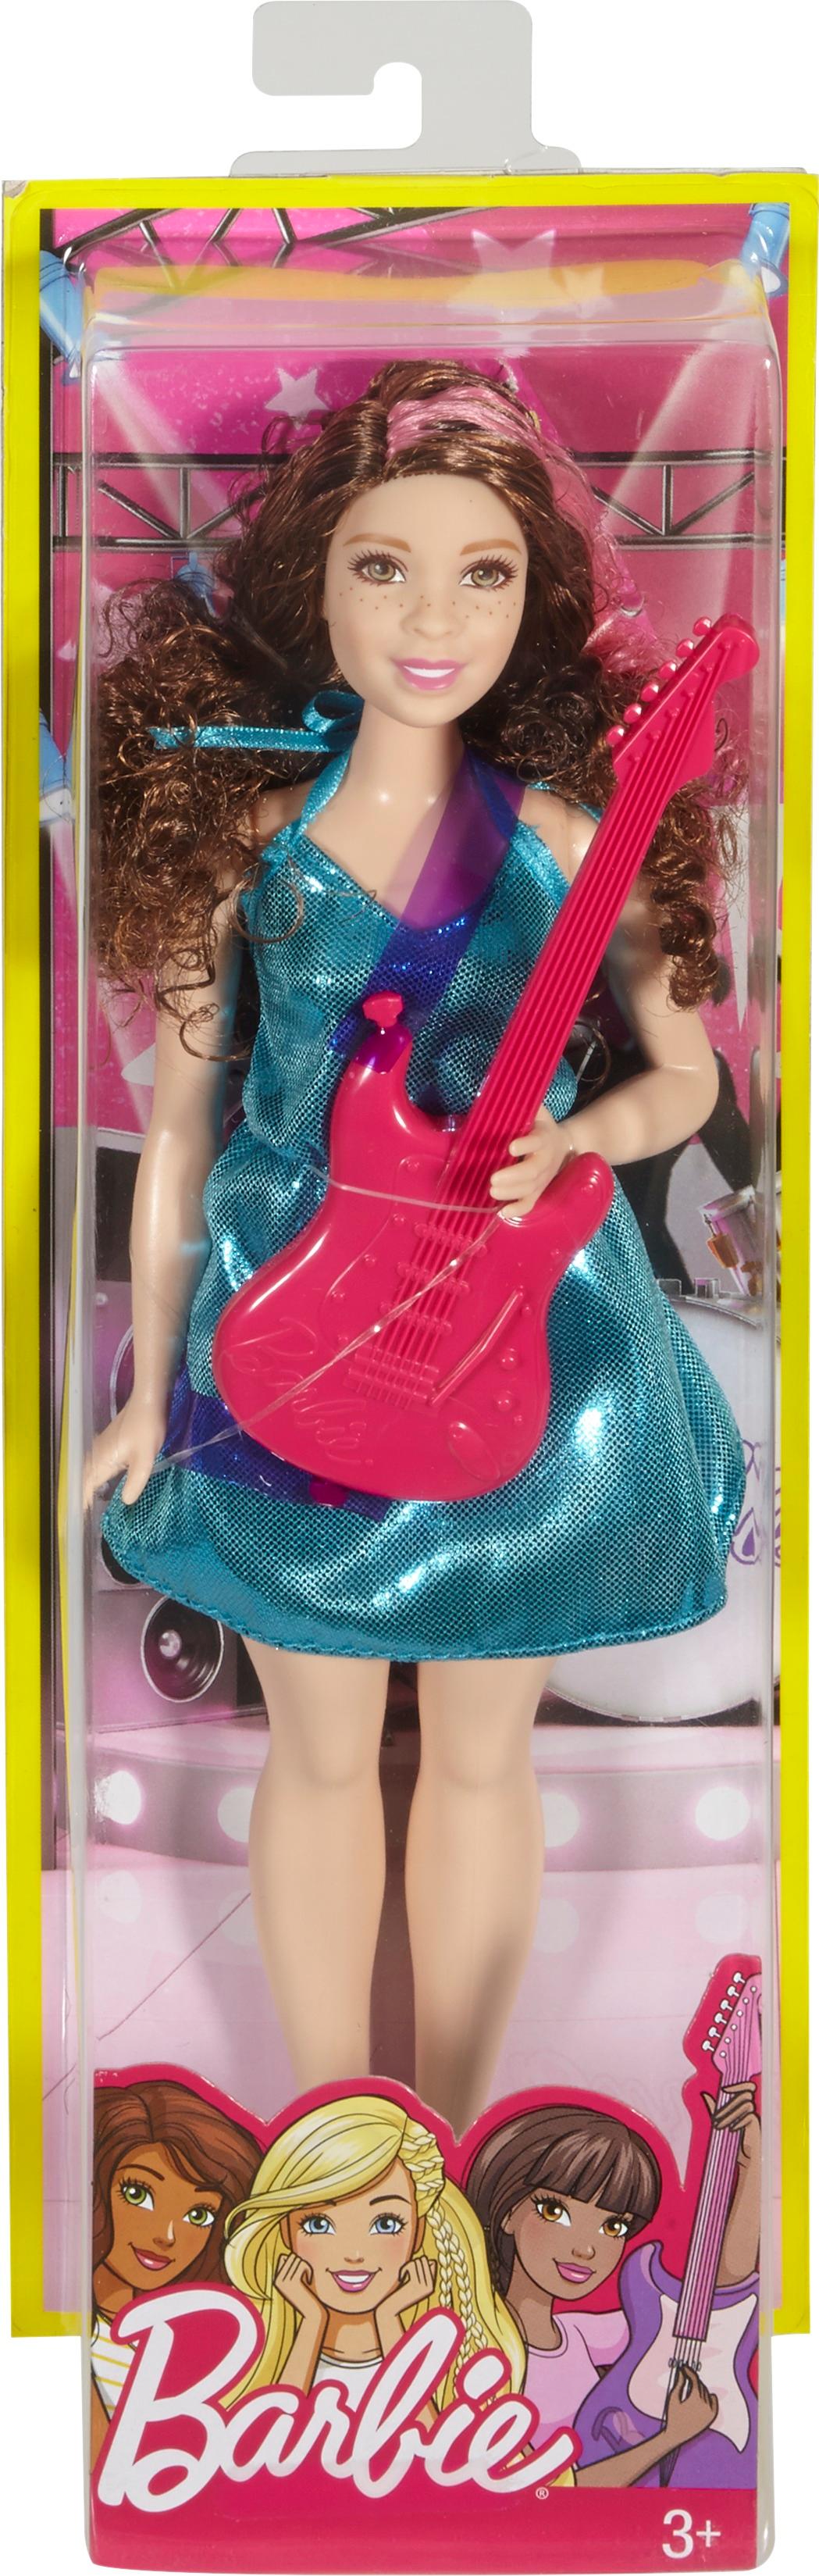 Mattel Barbie FASHIONISTAS Puppe #94 von 2018 FJF54 Sortiment FBR37 OVP 